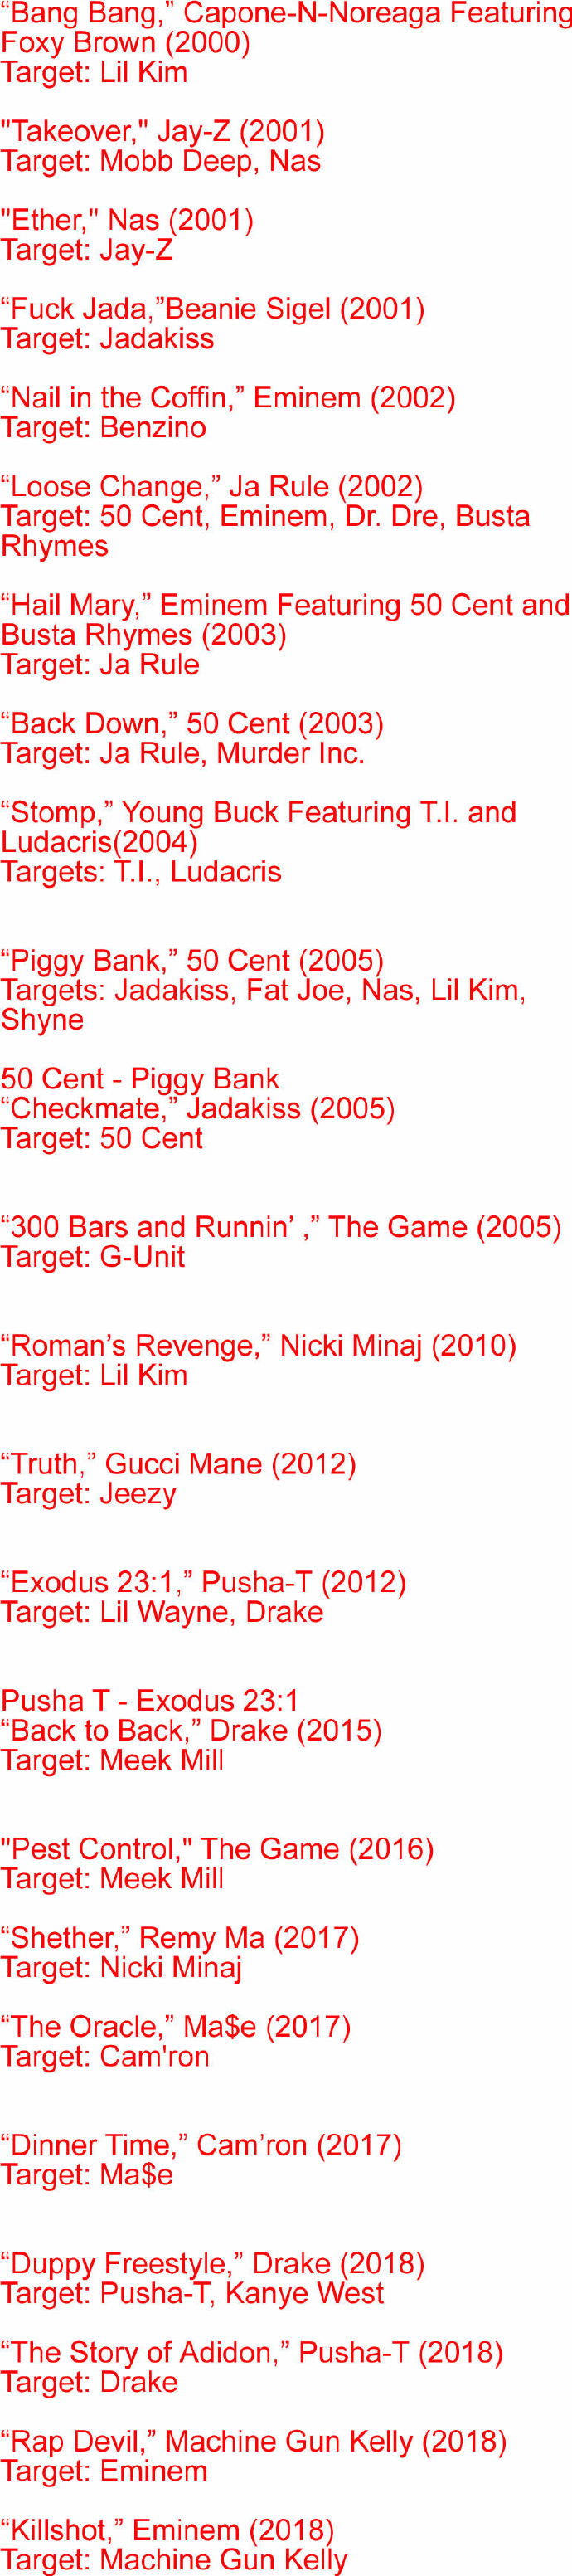 XXL评出了2000年后25首最棒的说唱Diss歌曲..哪些歌曲上榜